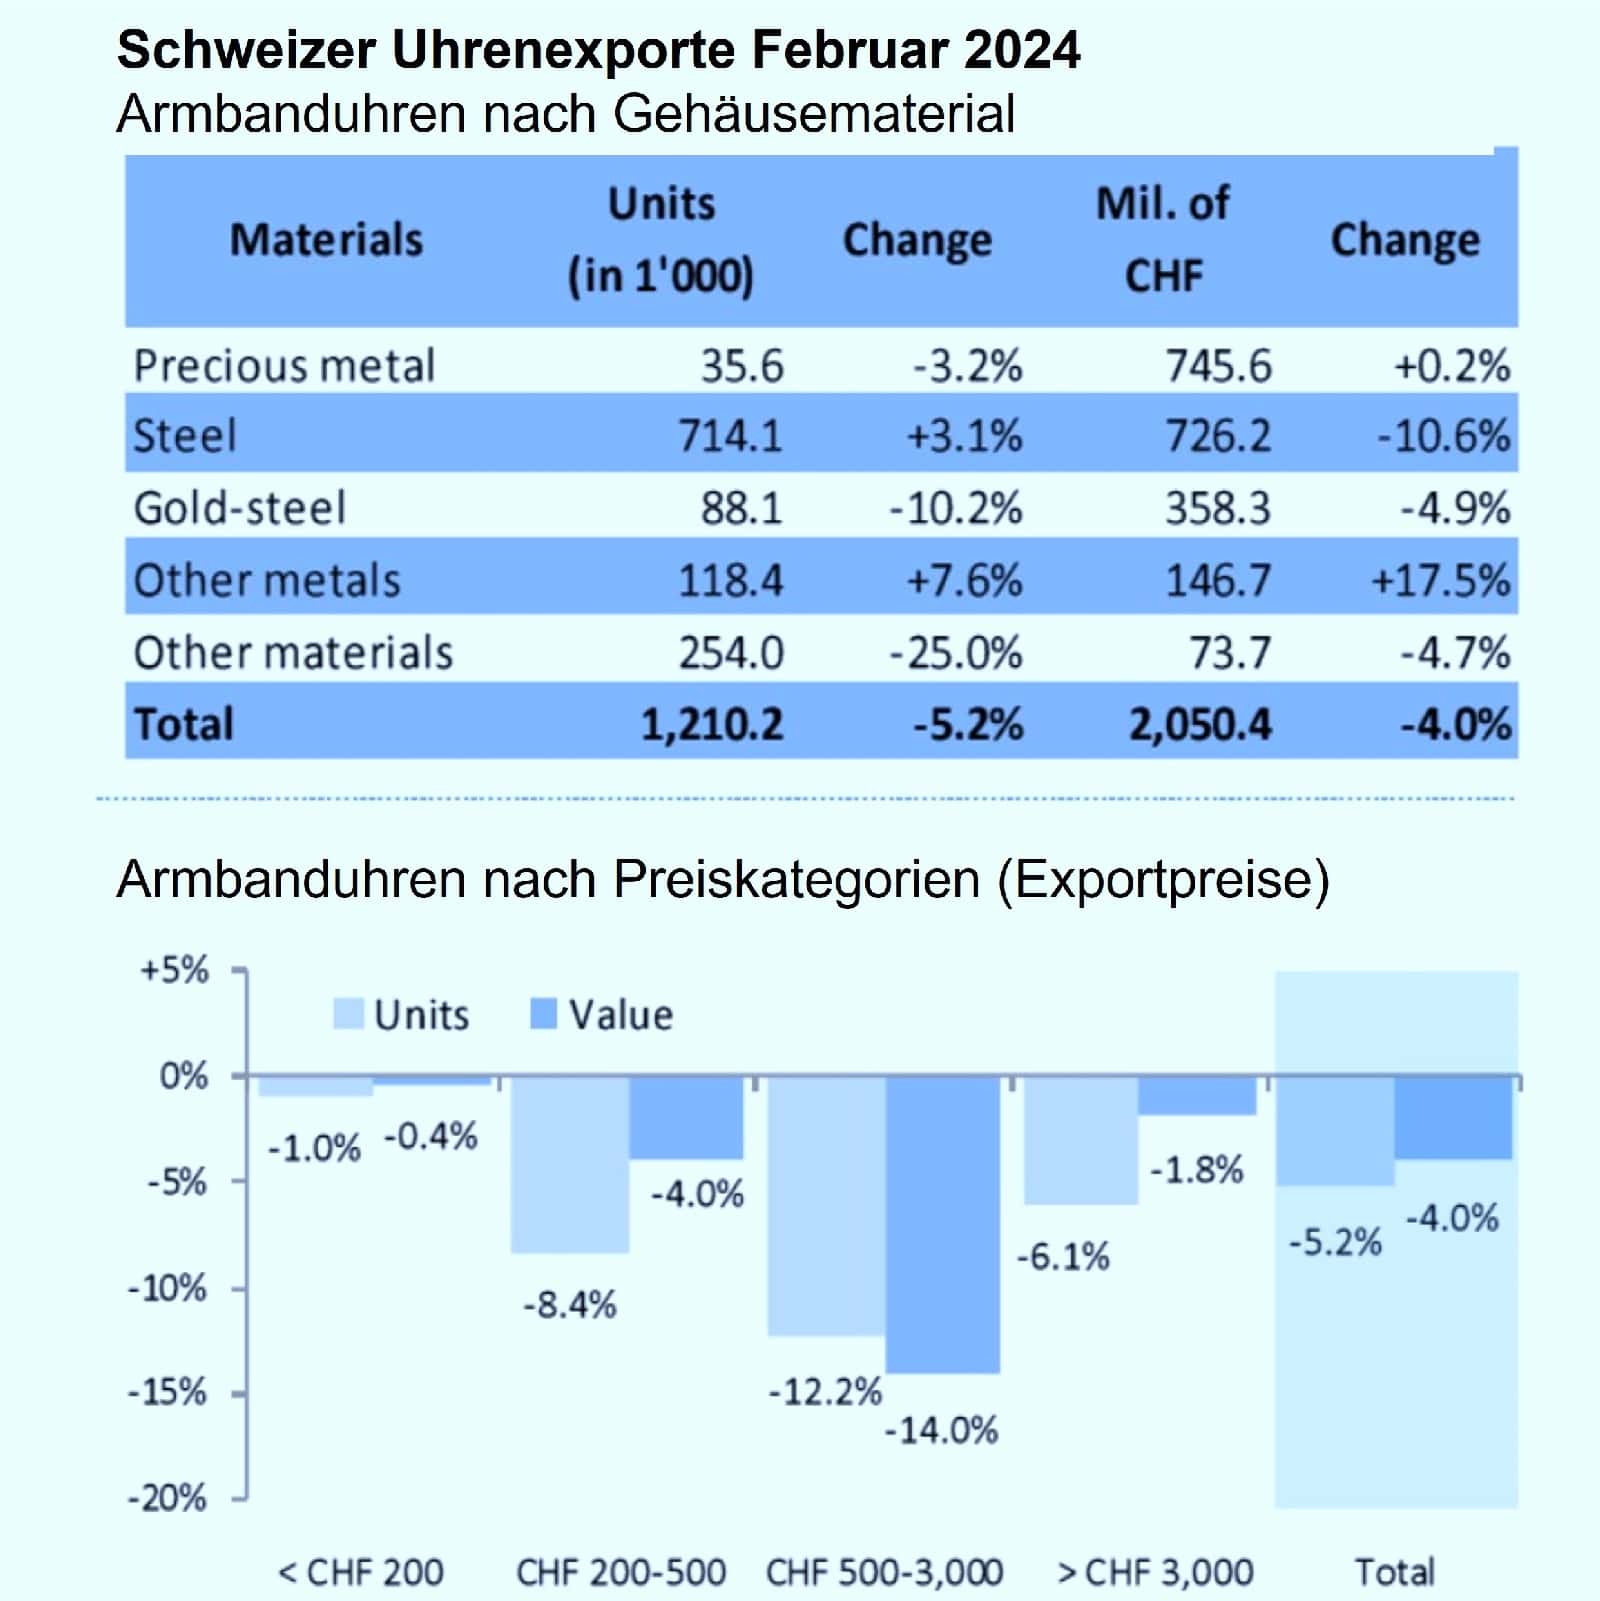 Schweizer Uhrenexporte Februar 2024 Materialien und Preiskategorien (FH)